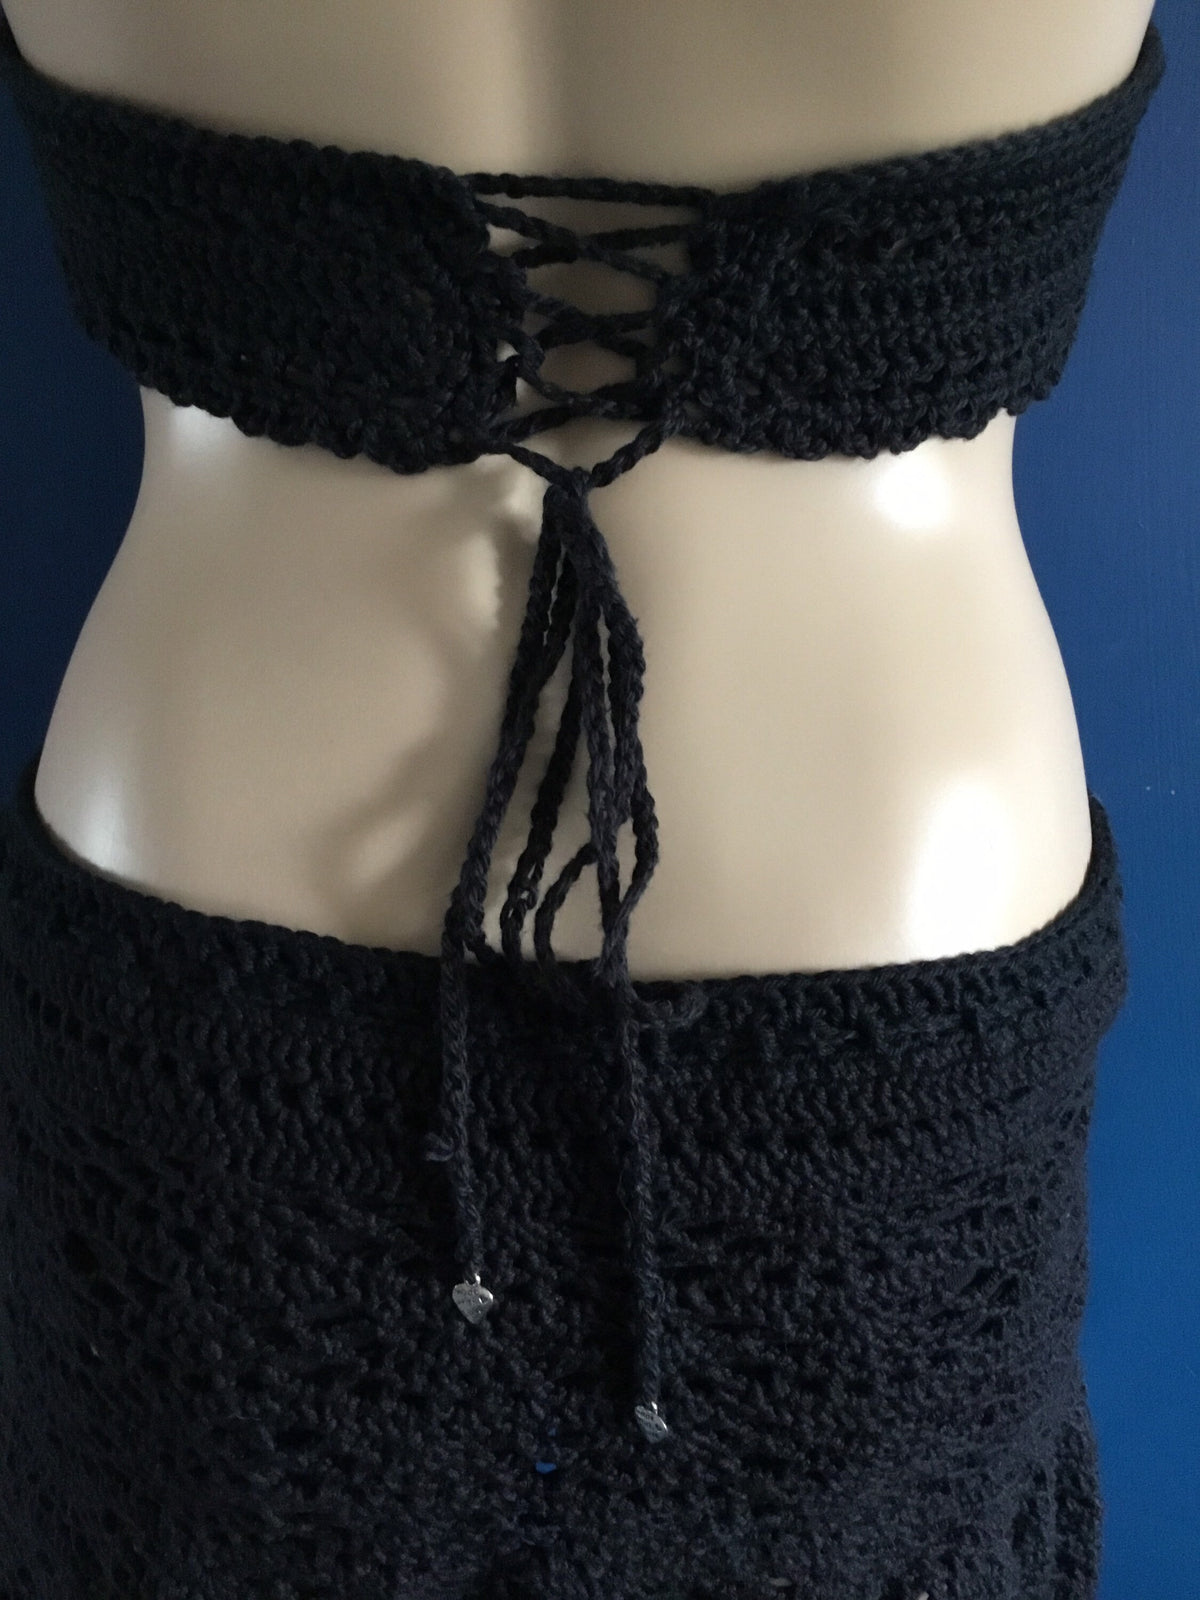 Handmade Crochet Black Halter Top Adjustable Padded Bralette - Festigal